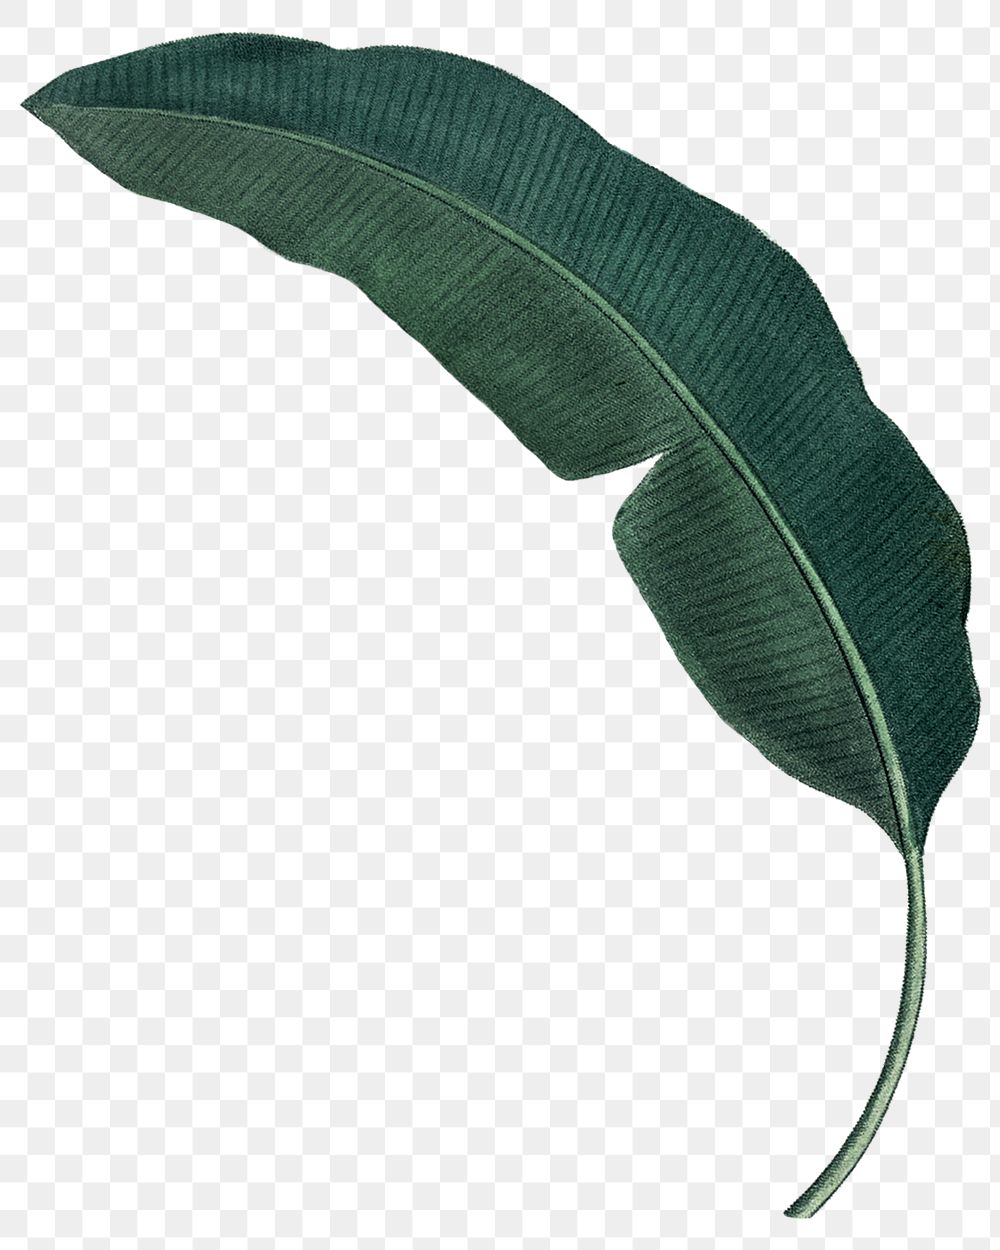 Banana leaf png tropical, transparent background